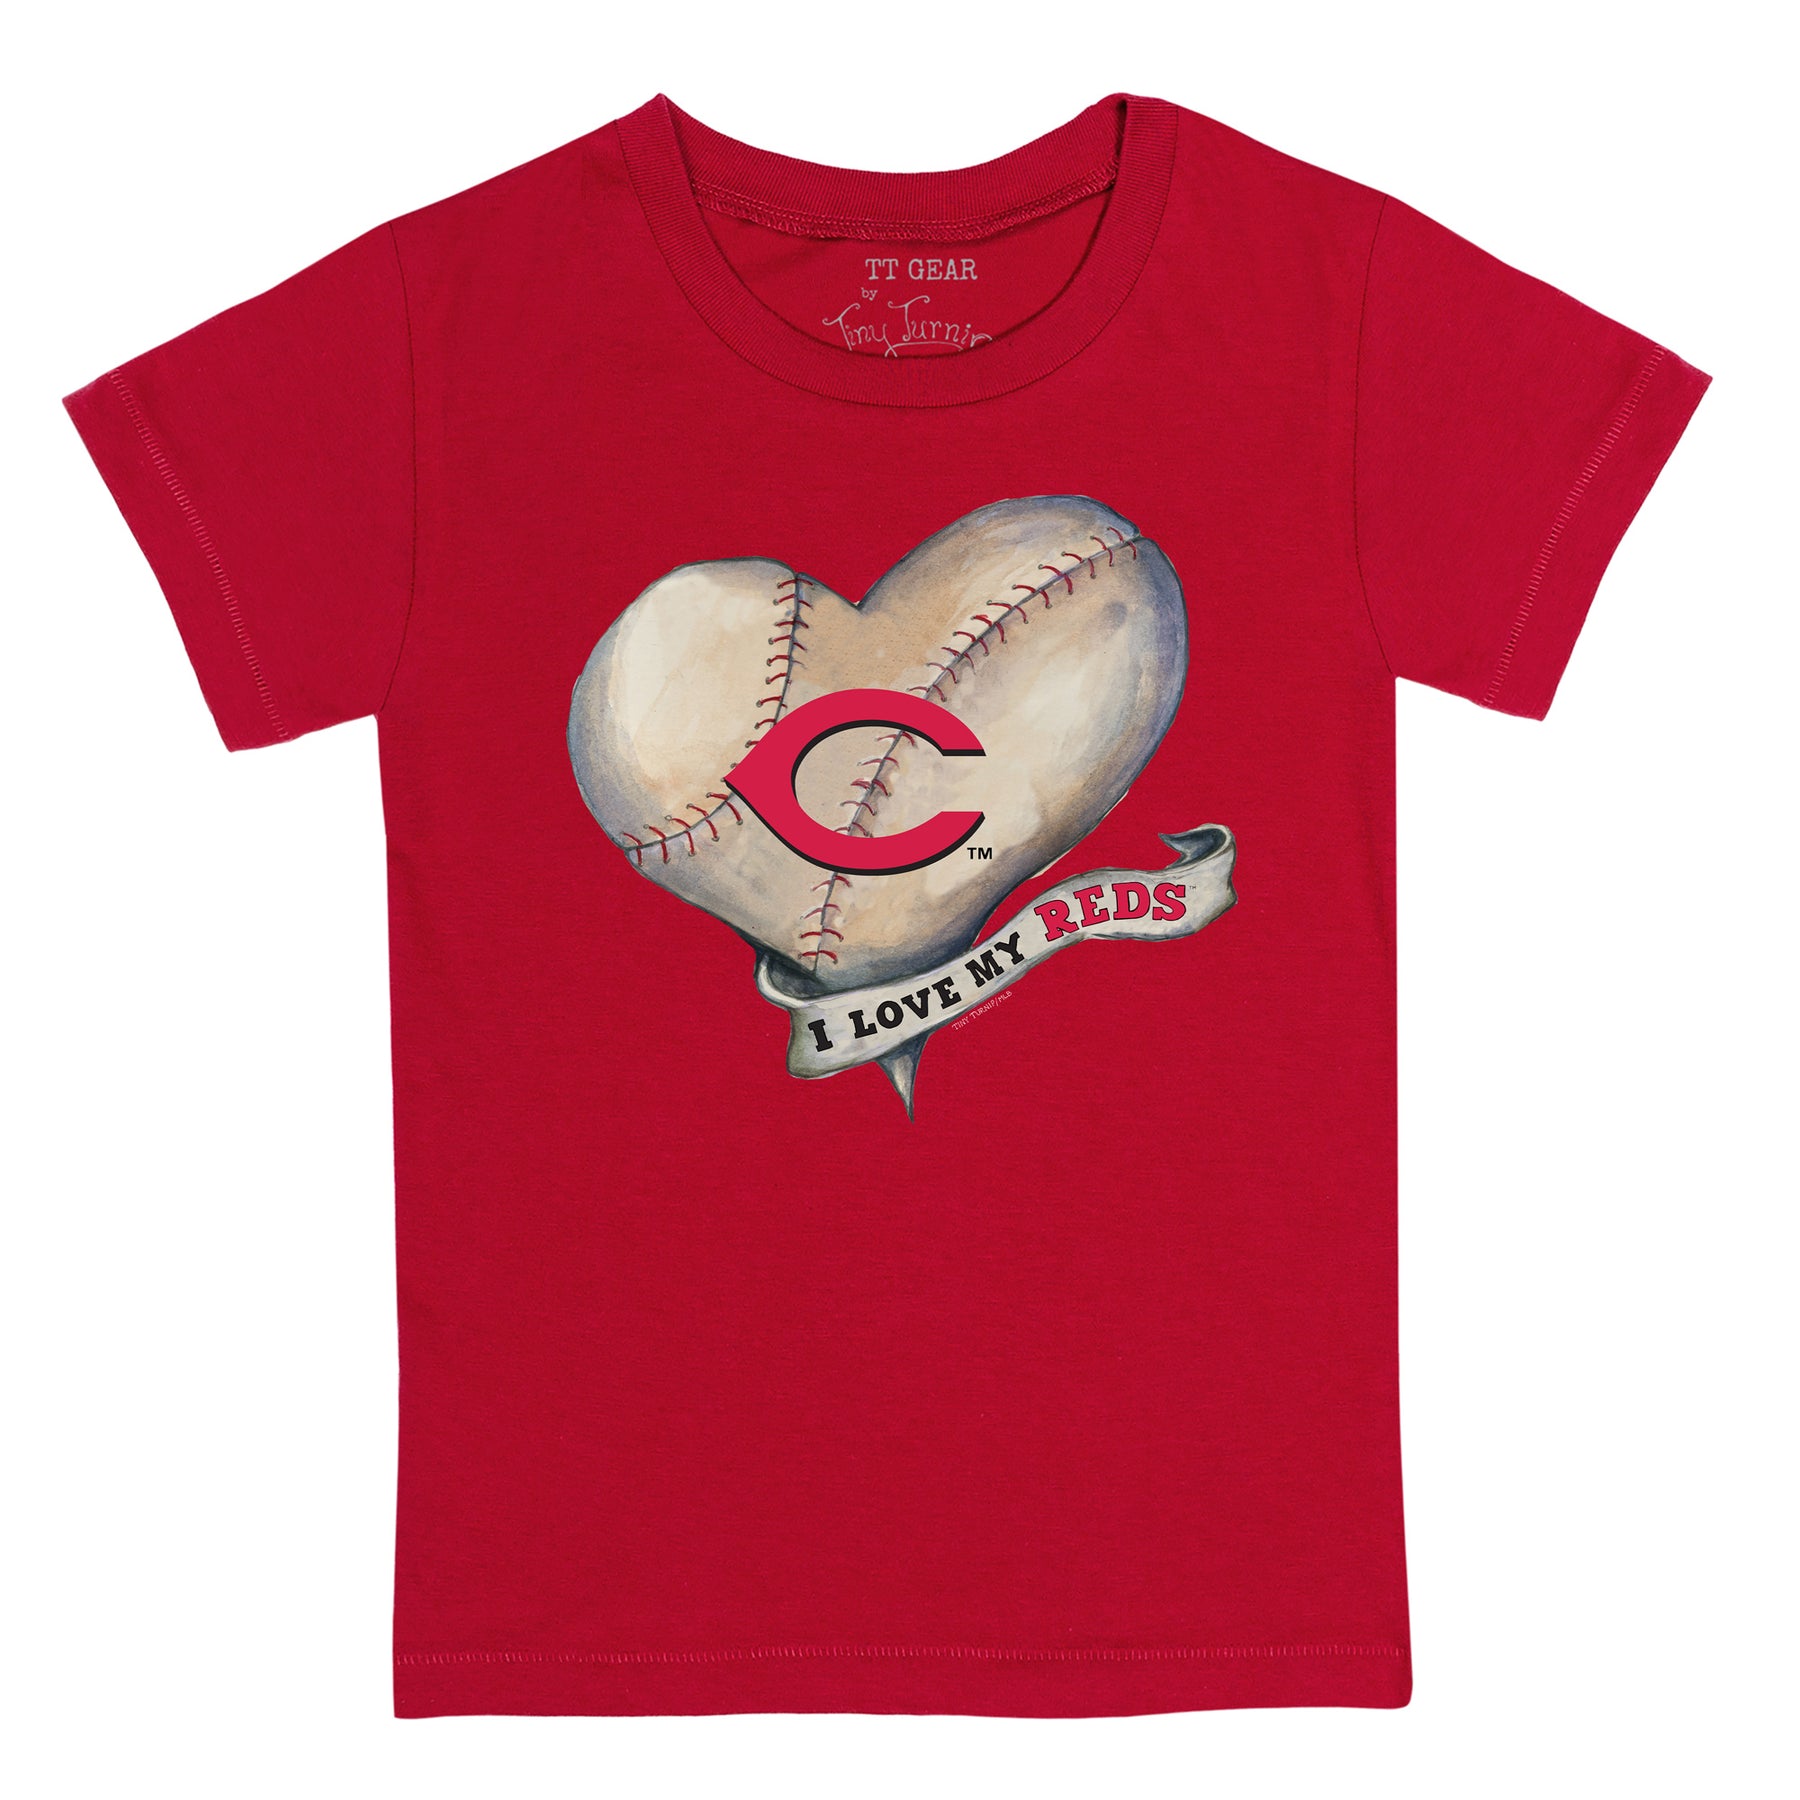 Pittsburgh Pirates Tiny Turnip Youth Heart Banner T-Shirt - White